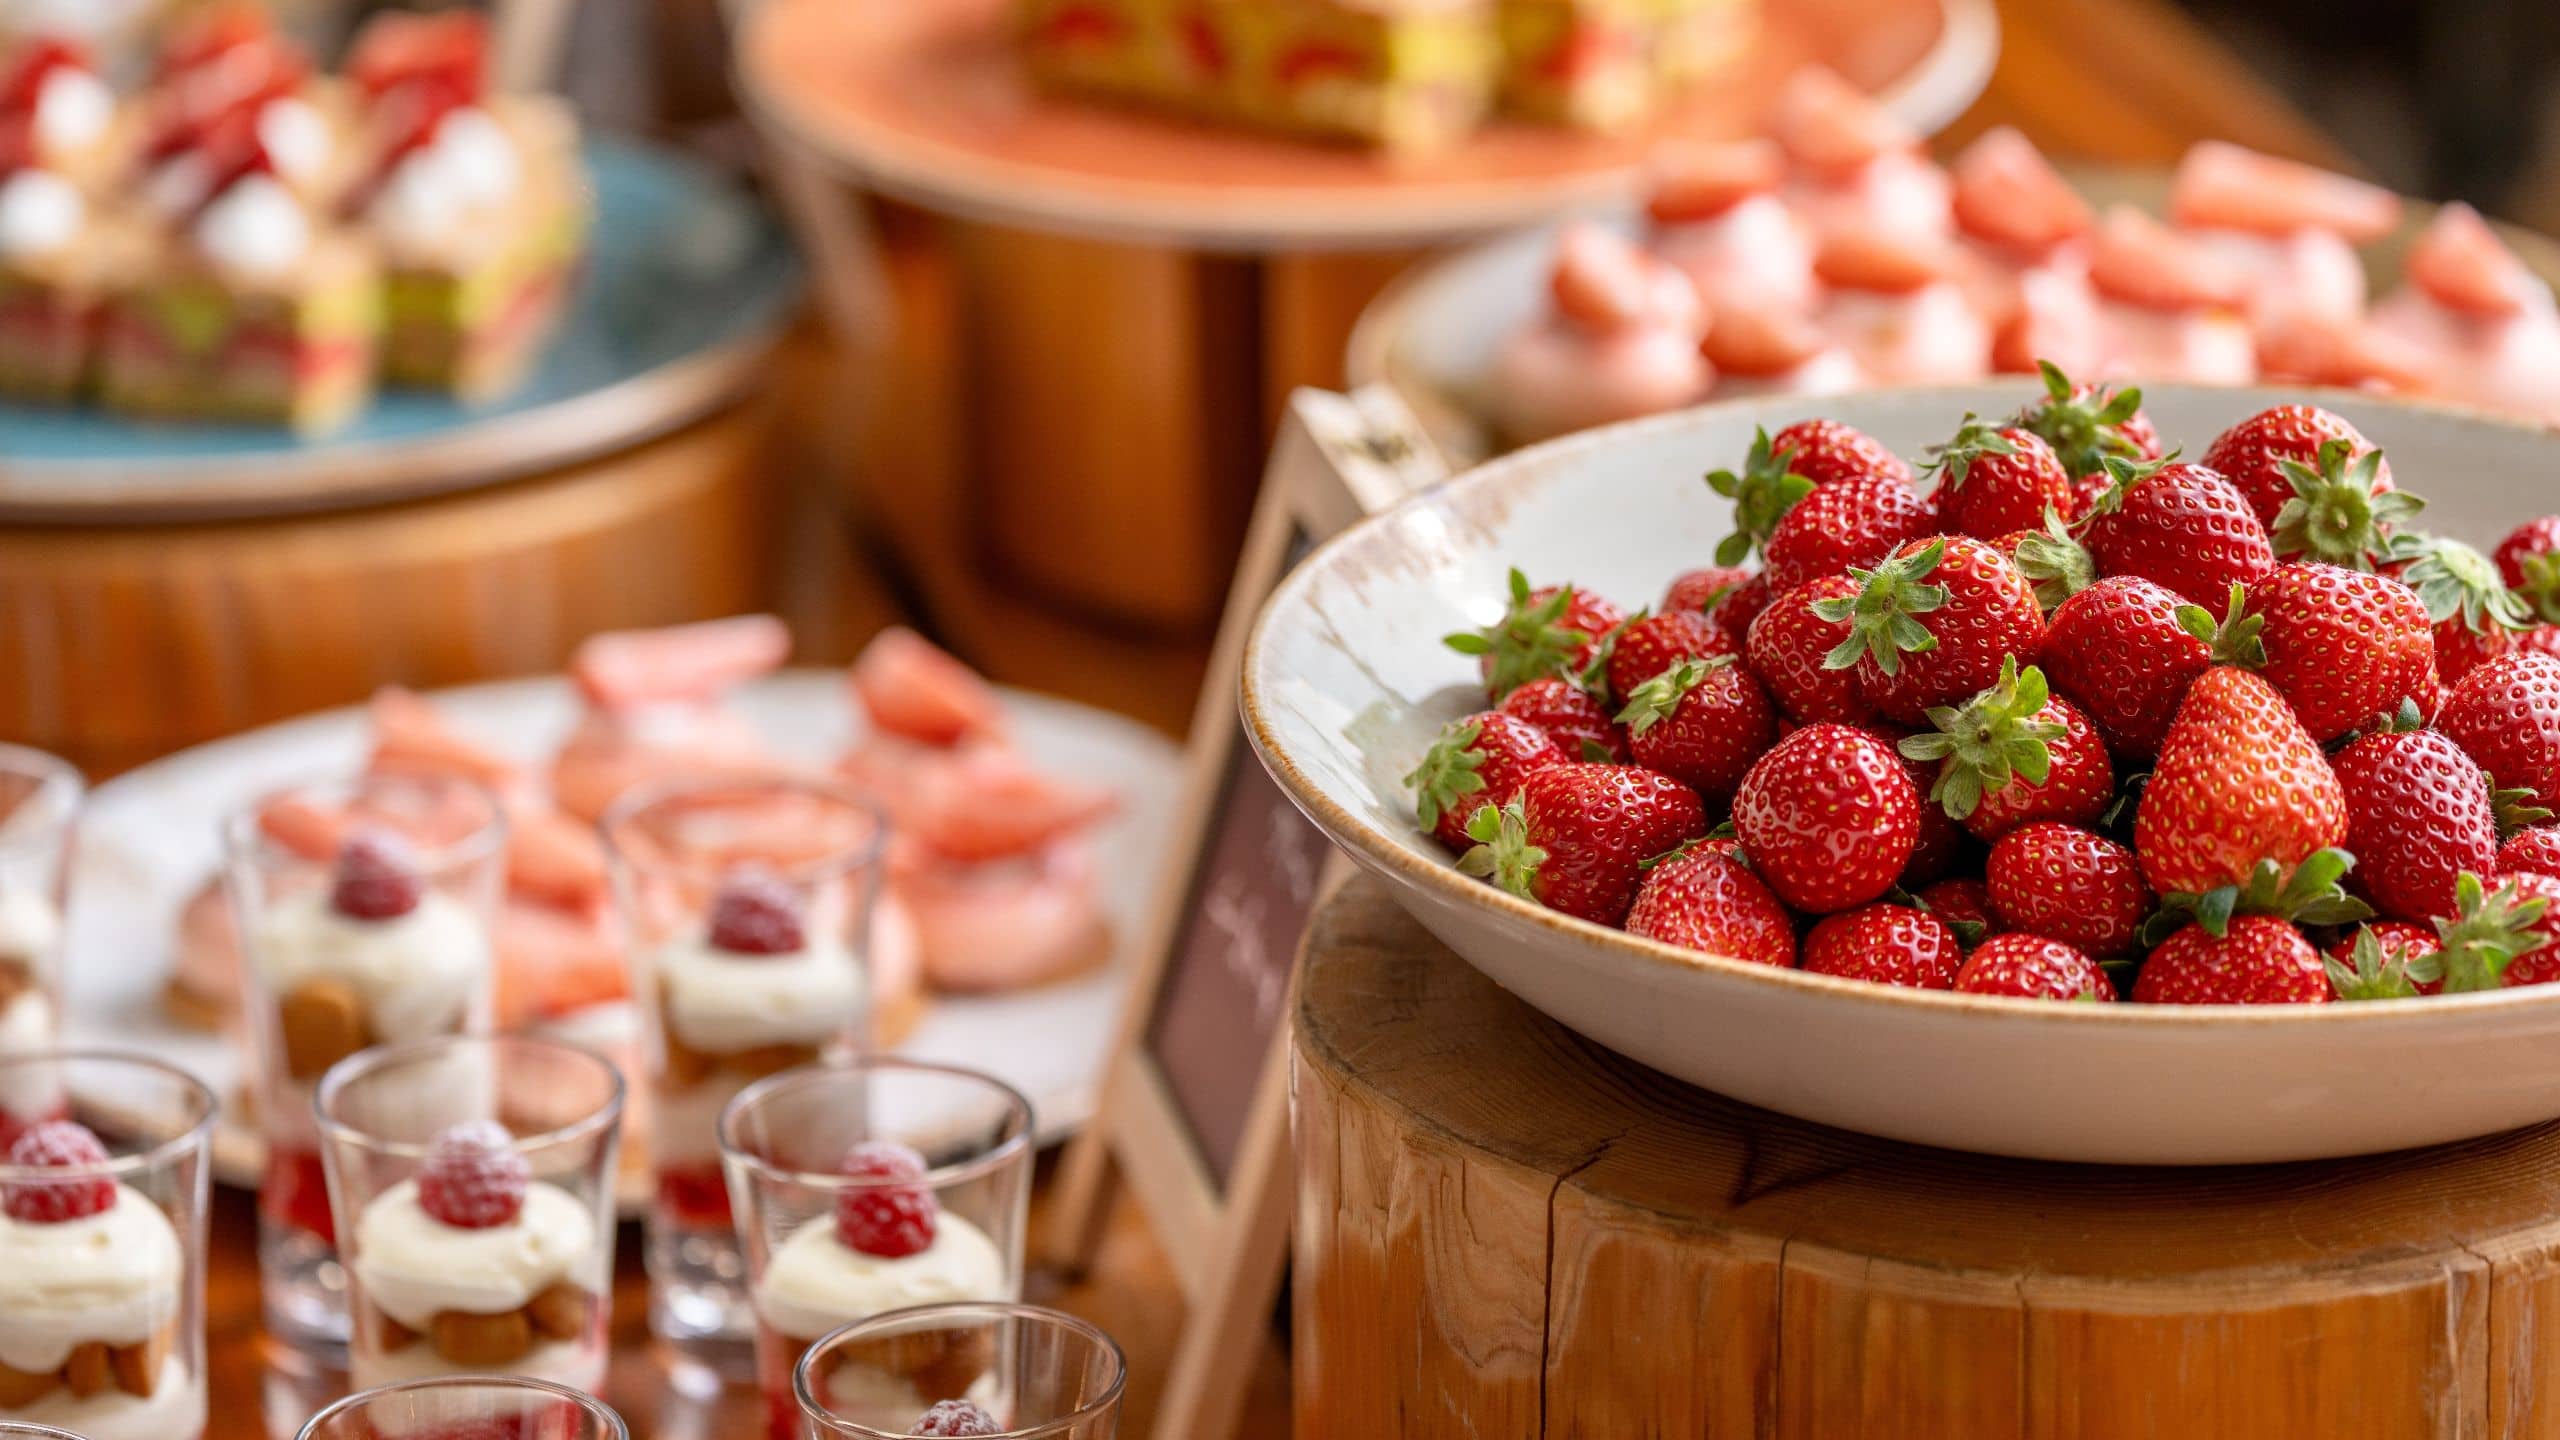 Hyatt Regency Kyoto Cafe 33 Strawberry Feast Strawberry Variety Table